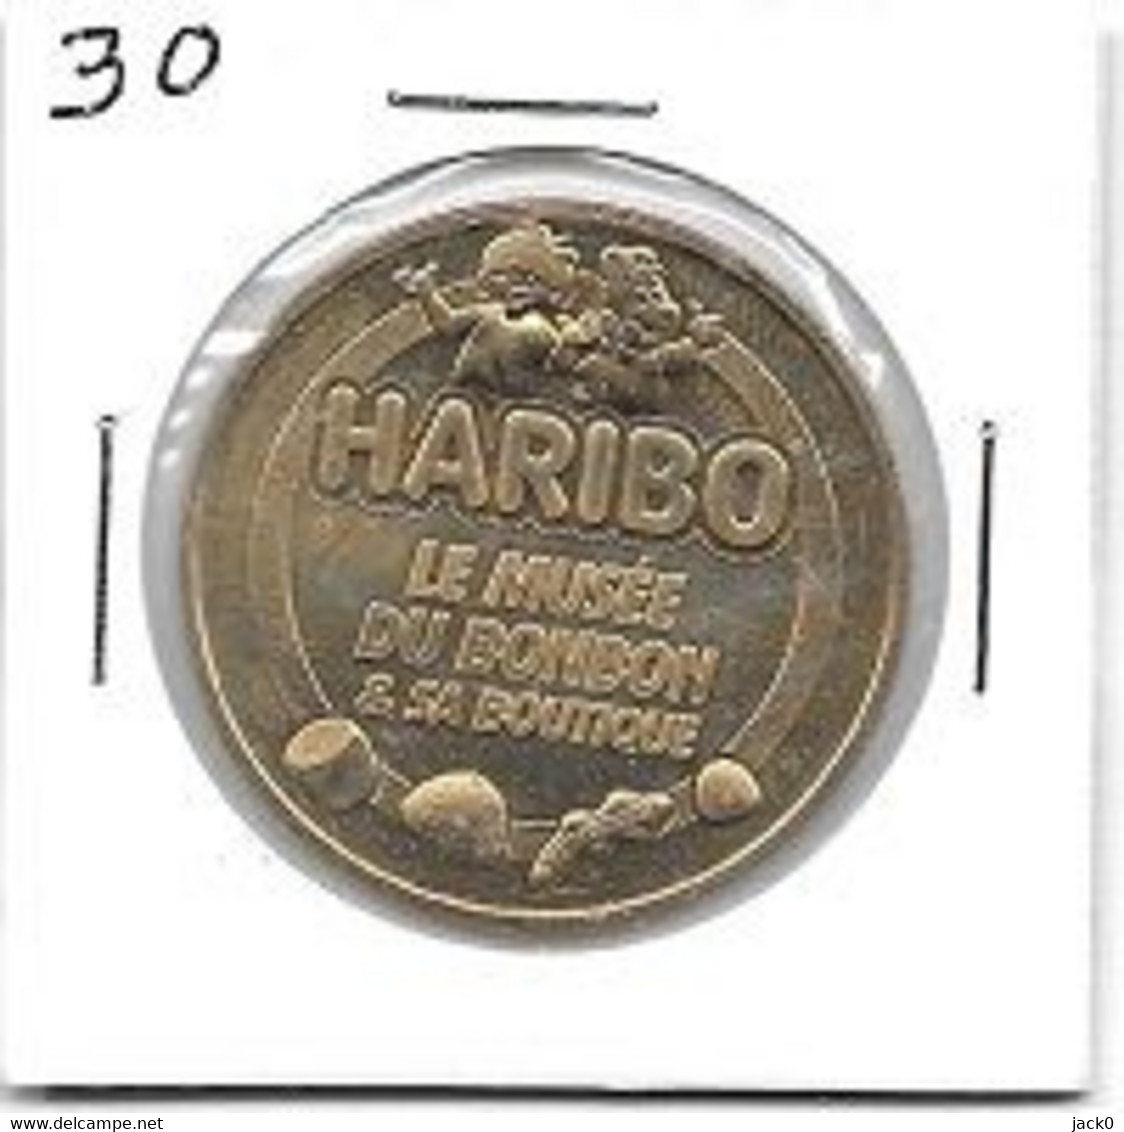 Médaille  Touristique  Ville  UZES, MUSÉE  DU  BONBON  HARIBO &  SA  BOUTIQUE  2018, PARIS  ( 30 ) - 2018